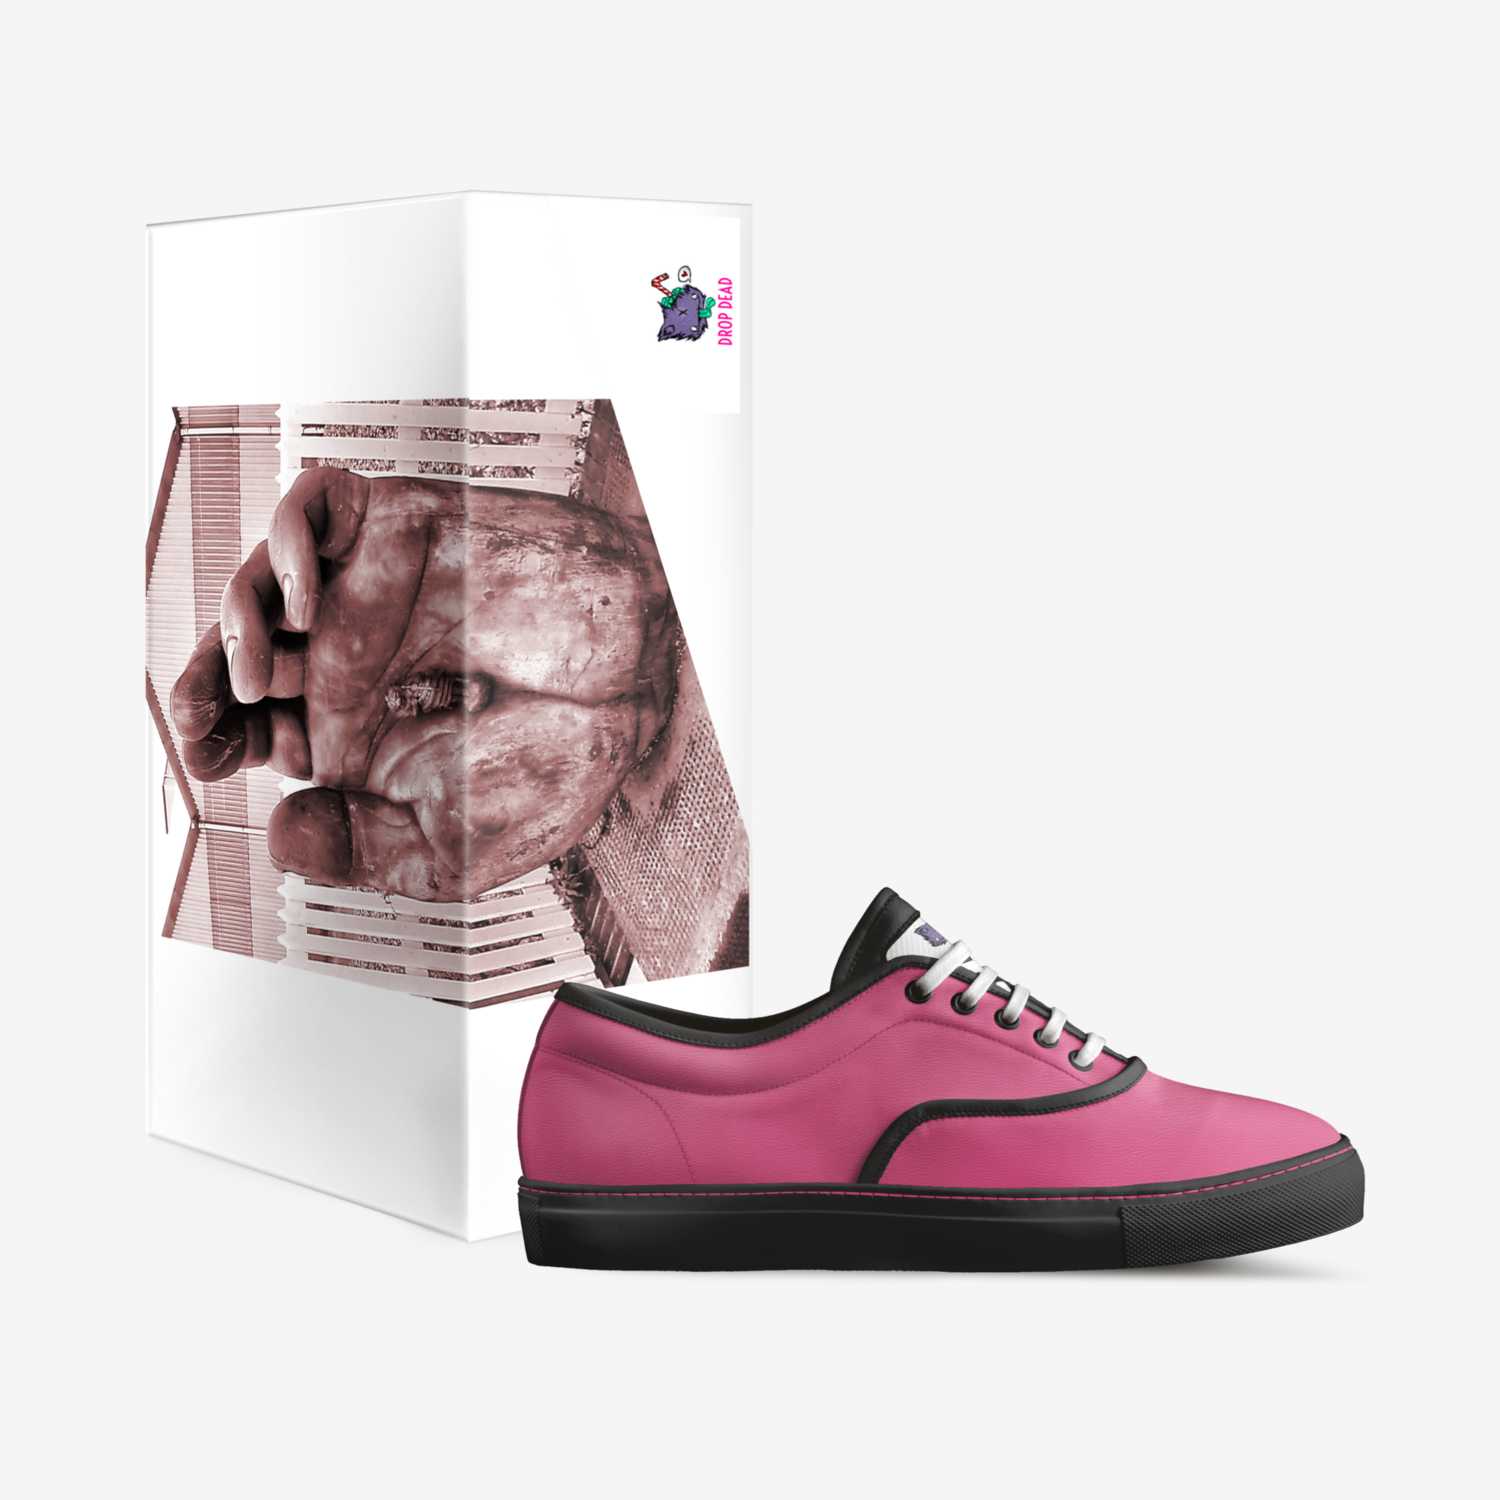 Drop Dead | A Custom Shoe by Jordan Themuse